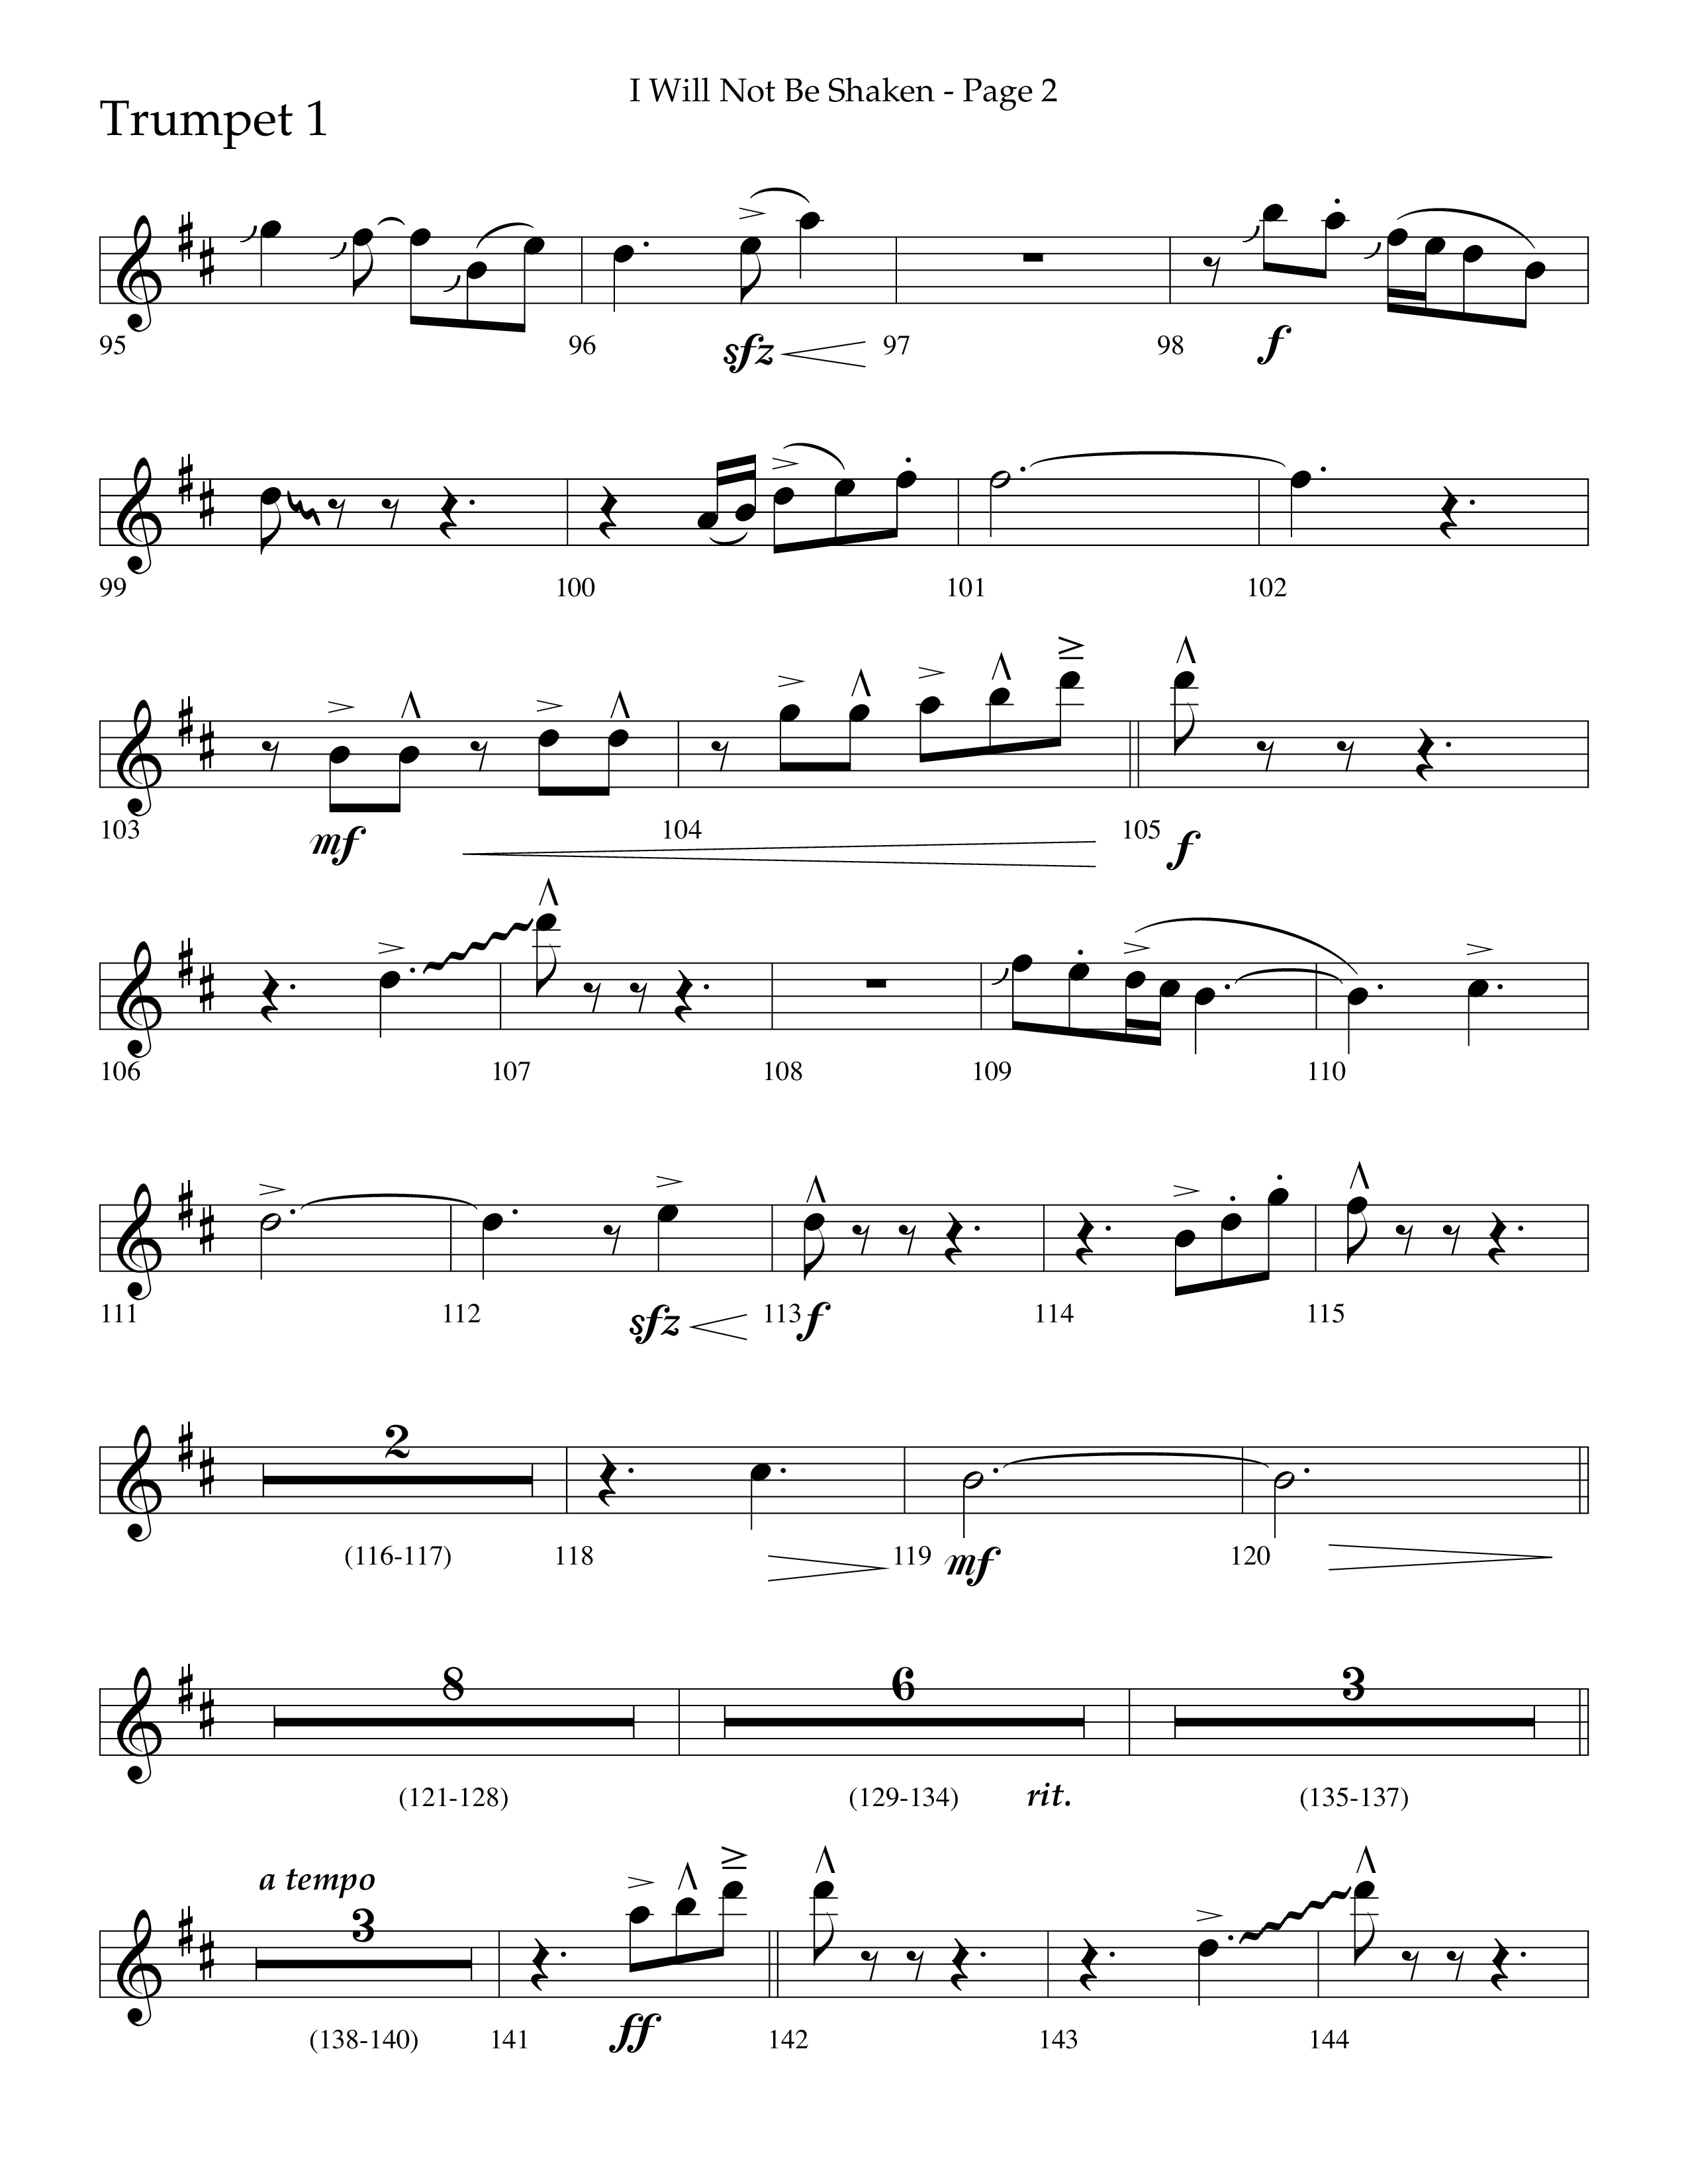 I Will Not Be Shaken (Choral Anthem SATB) Trumpet 1 (Lifeway Choral / Arr. Cliff Duren)